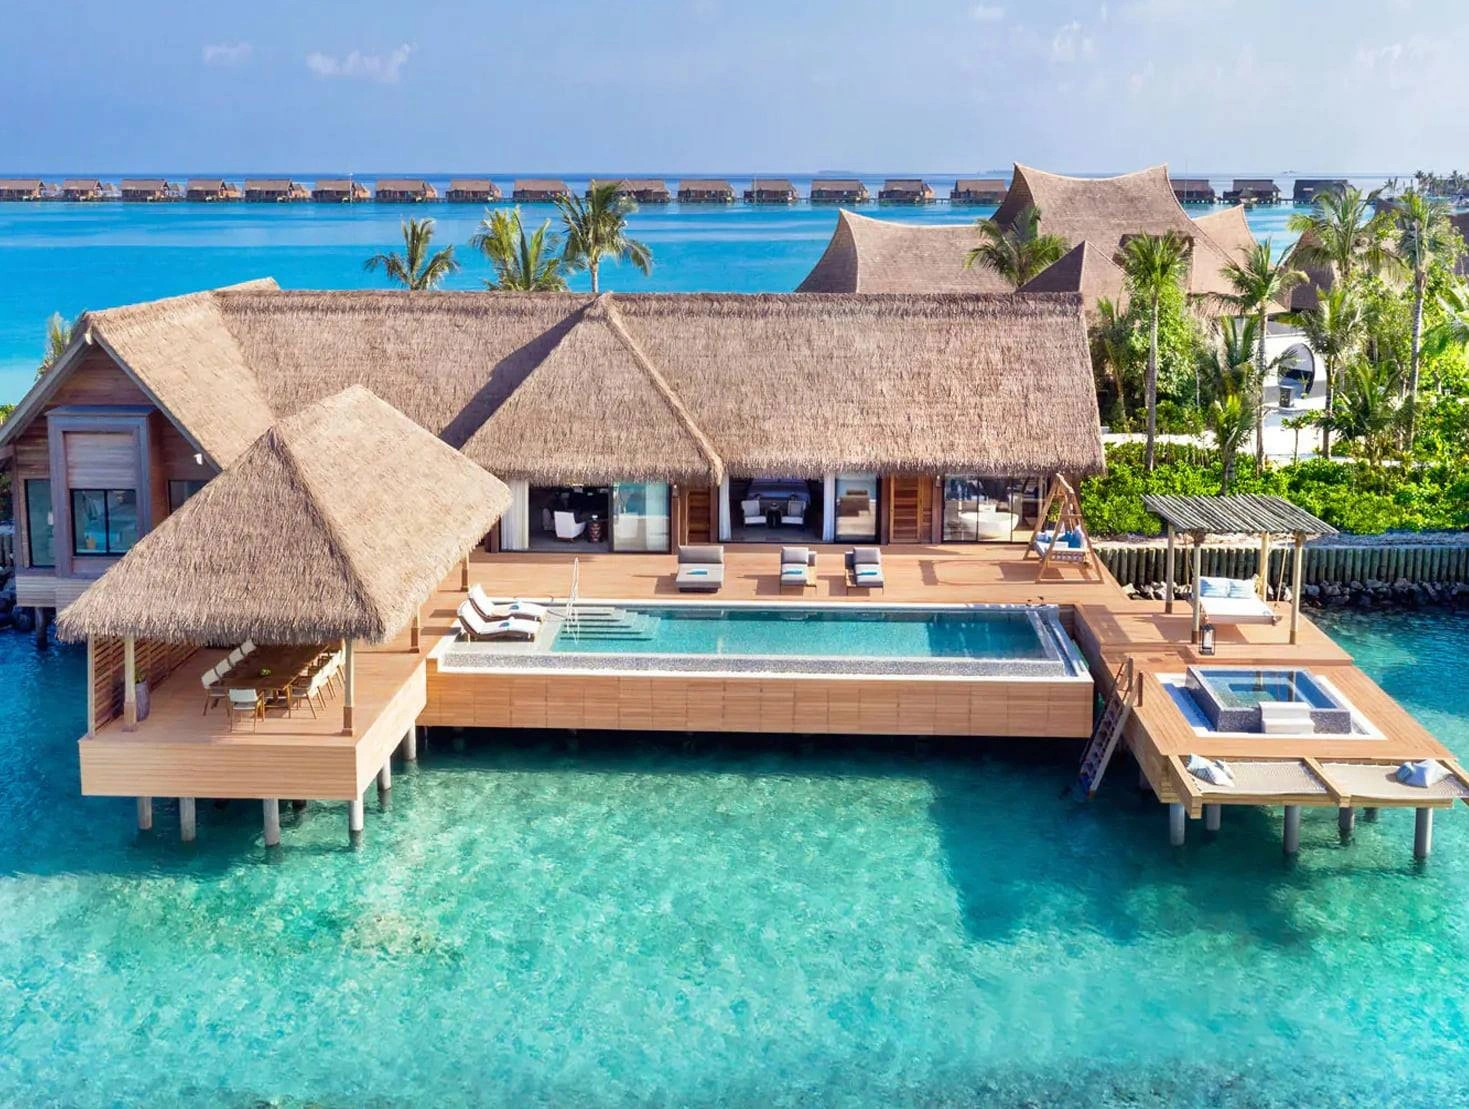 Bỏ túi kinh nghiệm du lịch đến thiên đường biển đảo Maldives